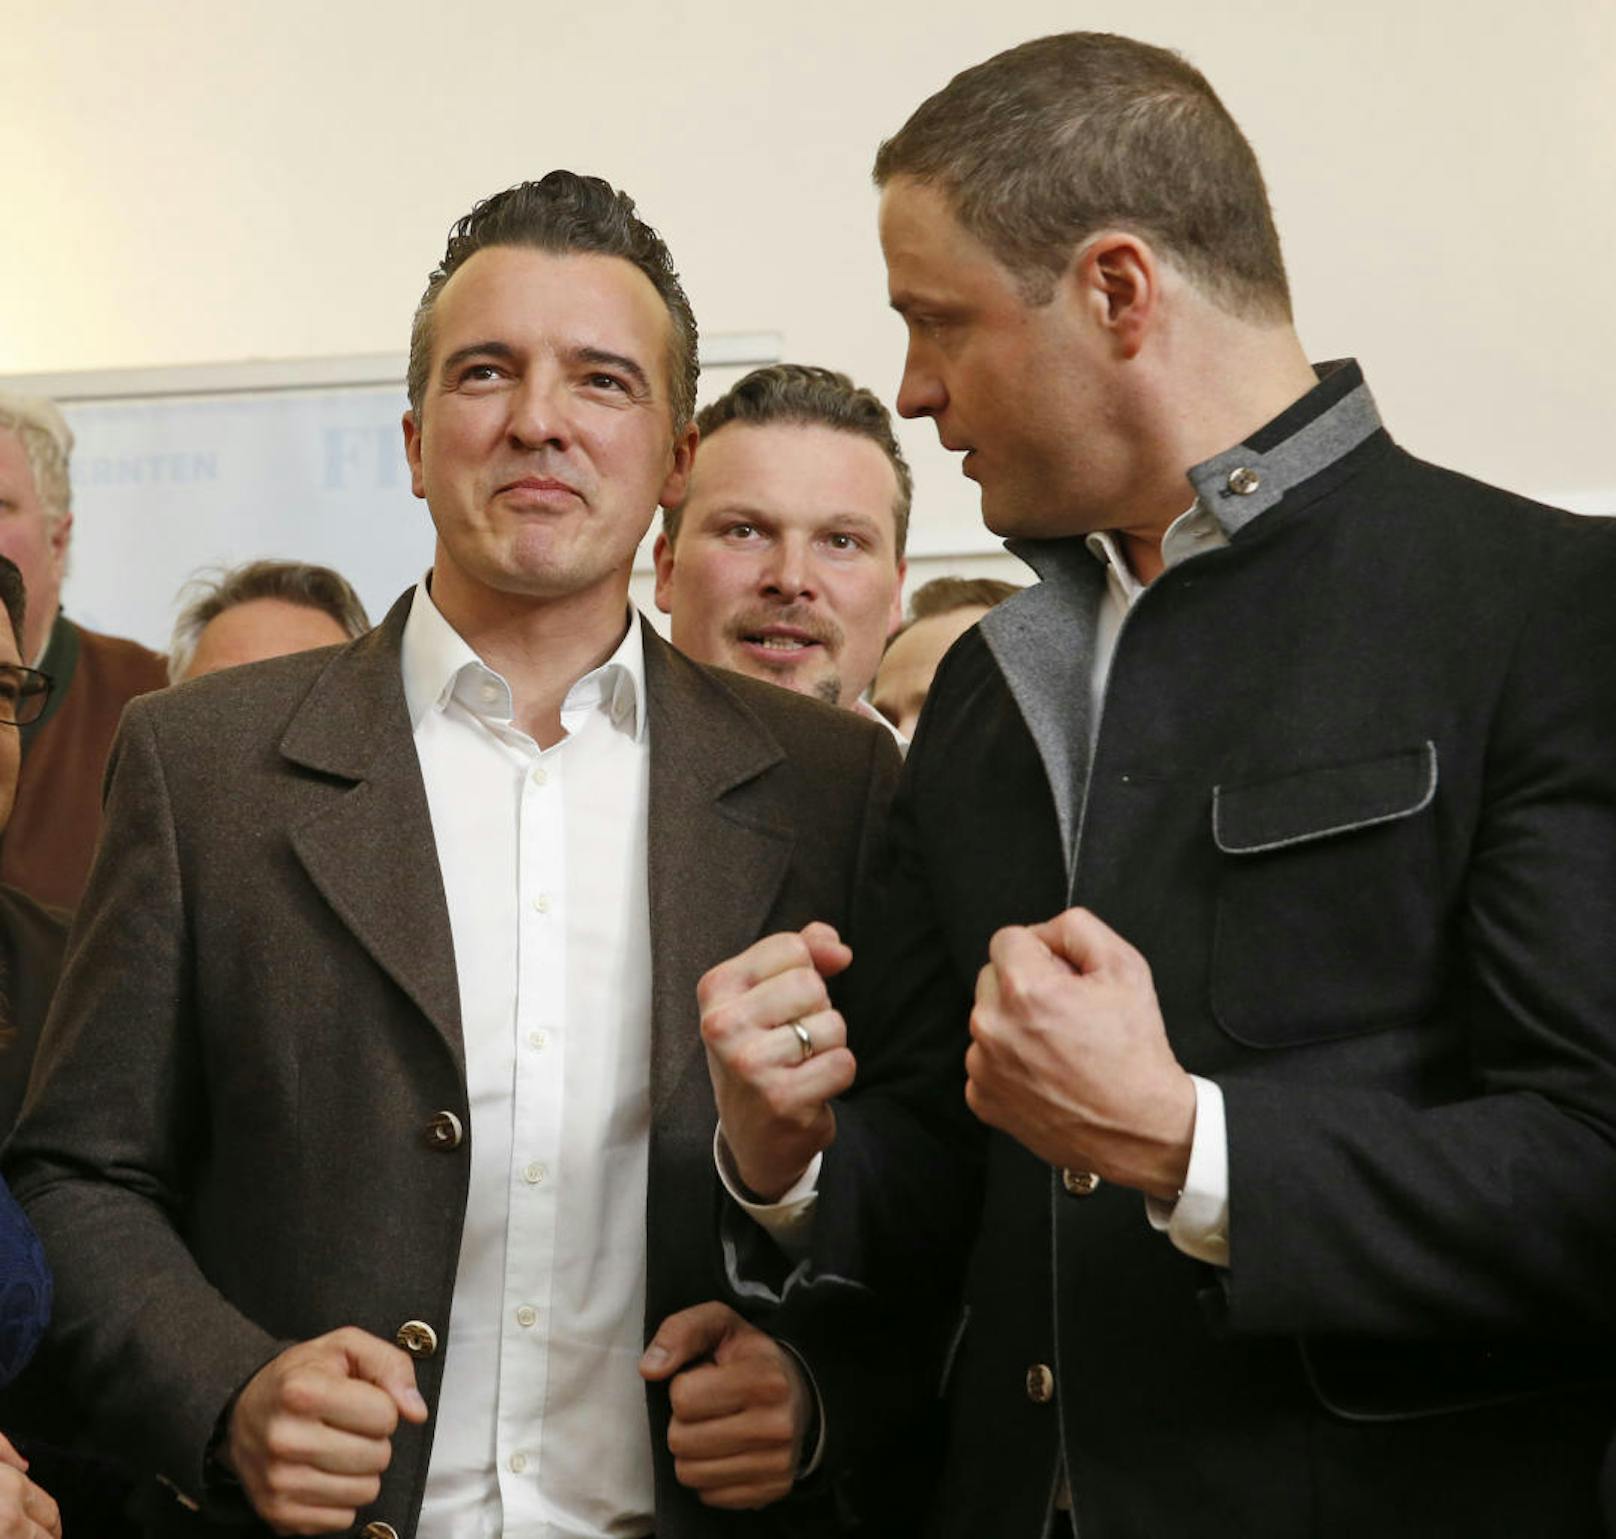 FPÖ-Spitzenkandidat Gernot Darmann (l.) und FPÖ-Parlaments-Klubobmann Johann Gudenus in der FPÖ-Wahlzentrale in Klagenfurt am Sonntag, 4. März 2018, anlässlich der Kärntner Landtagswahl.